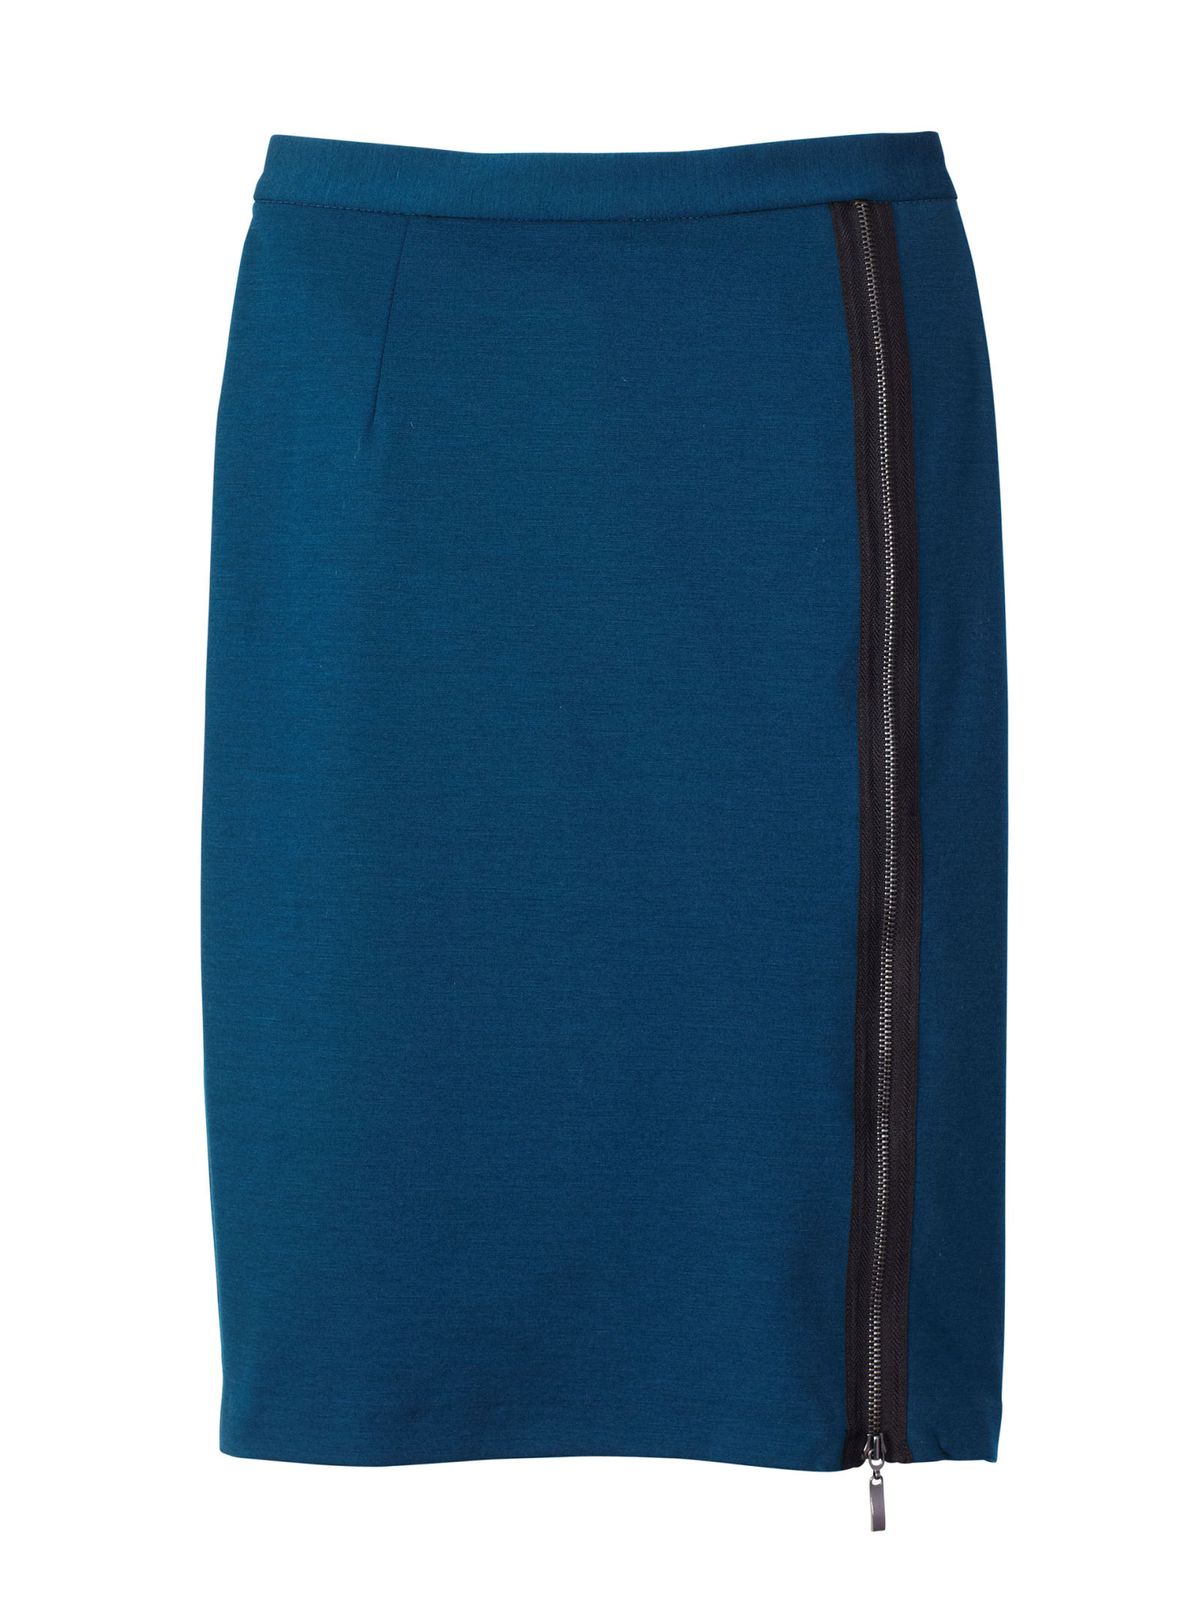 flattering blue skirt